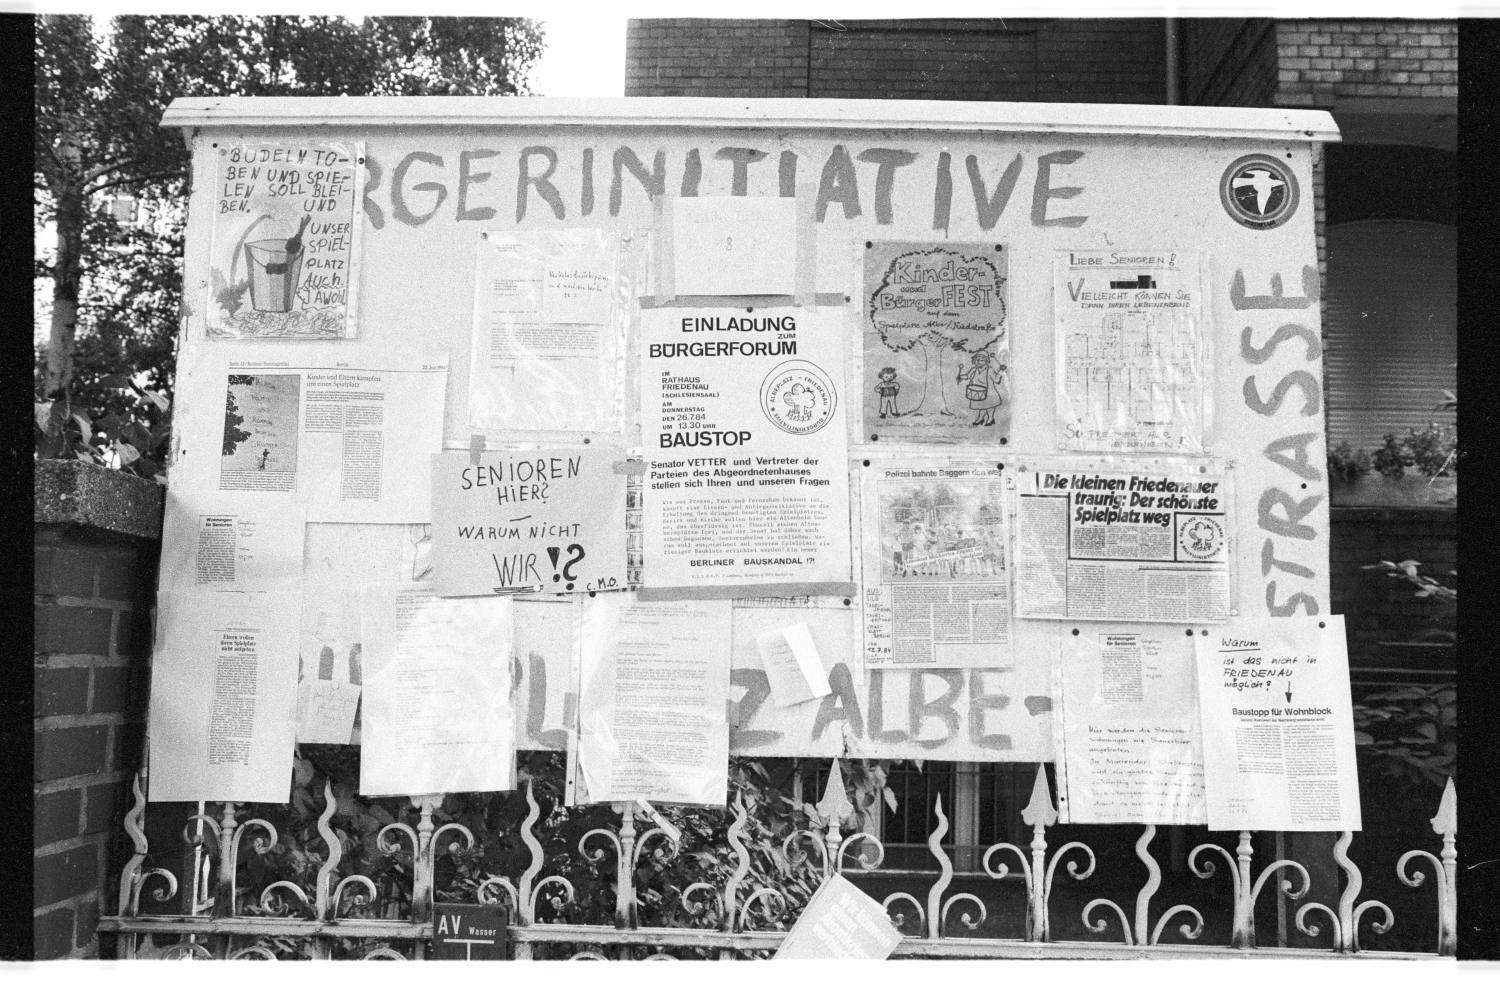 Kleinbildnegative: Protest gegen Schließung des Spielplatzes Albestraße, 1984 (Museen Tempelhof-Schöneberg/Jürgen Henschel RR-F)